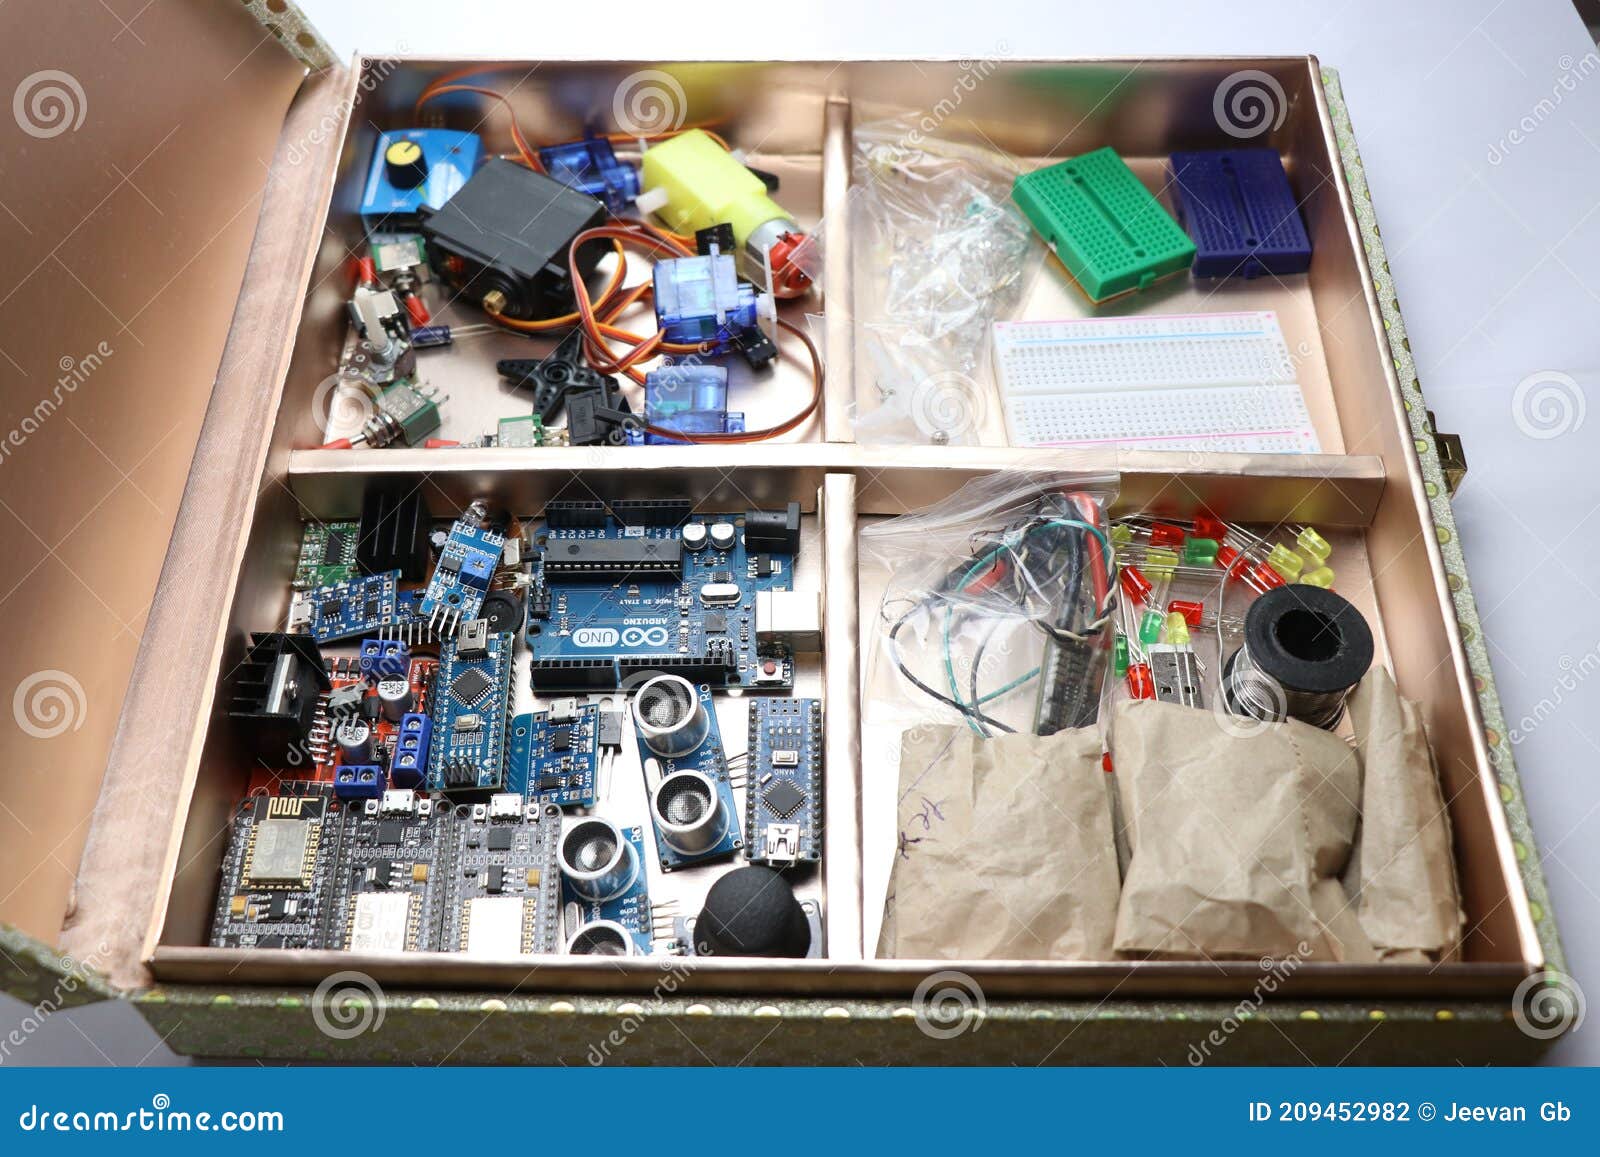 Что можно сделать на Arduino?